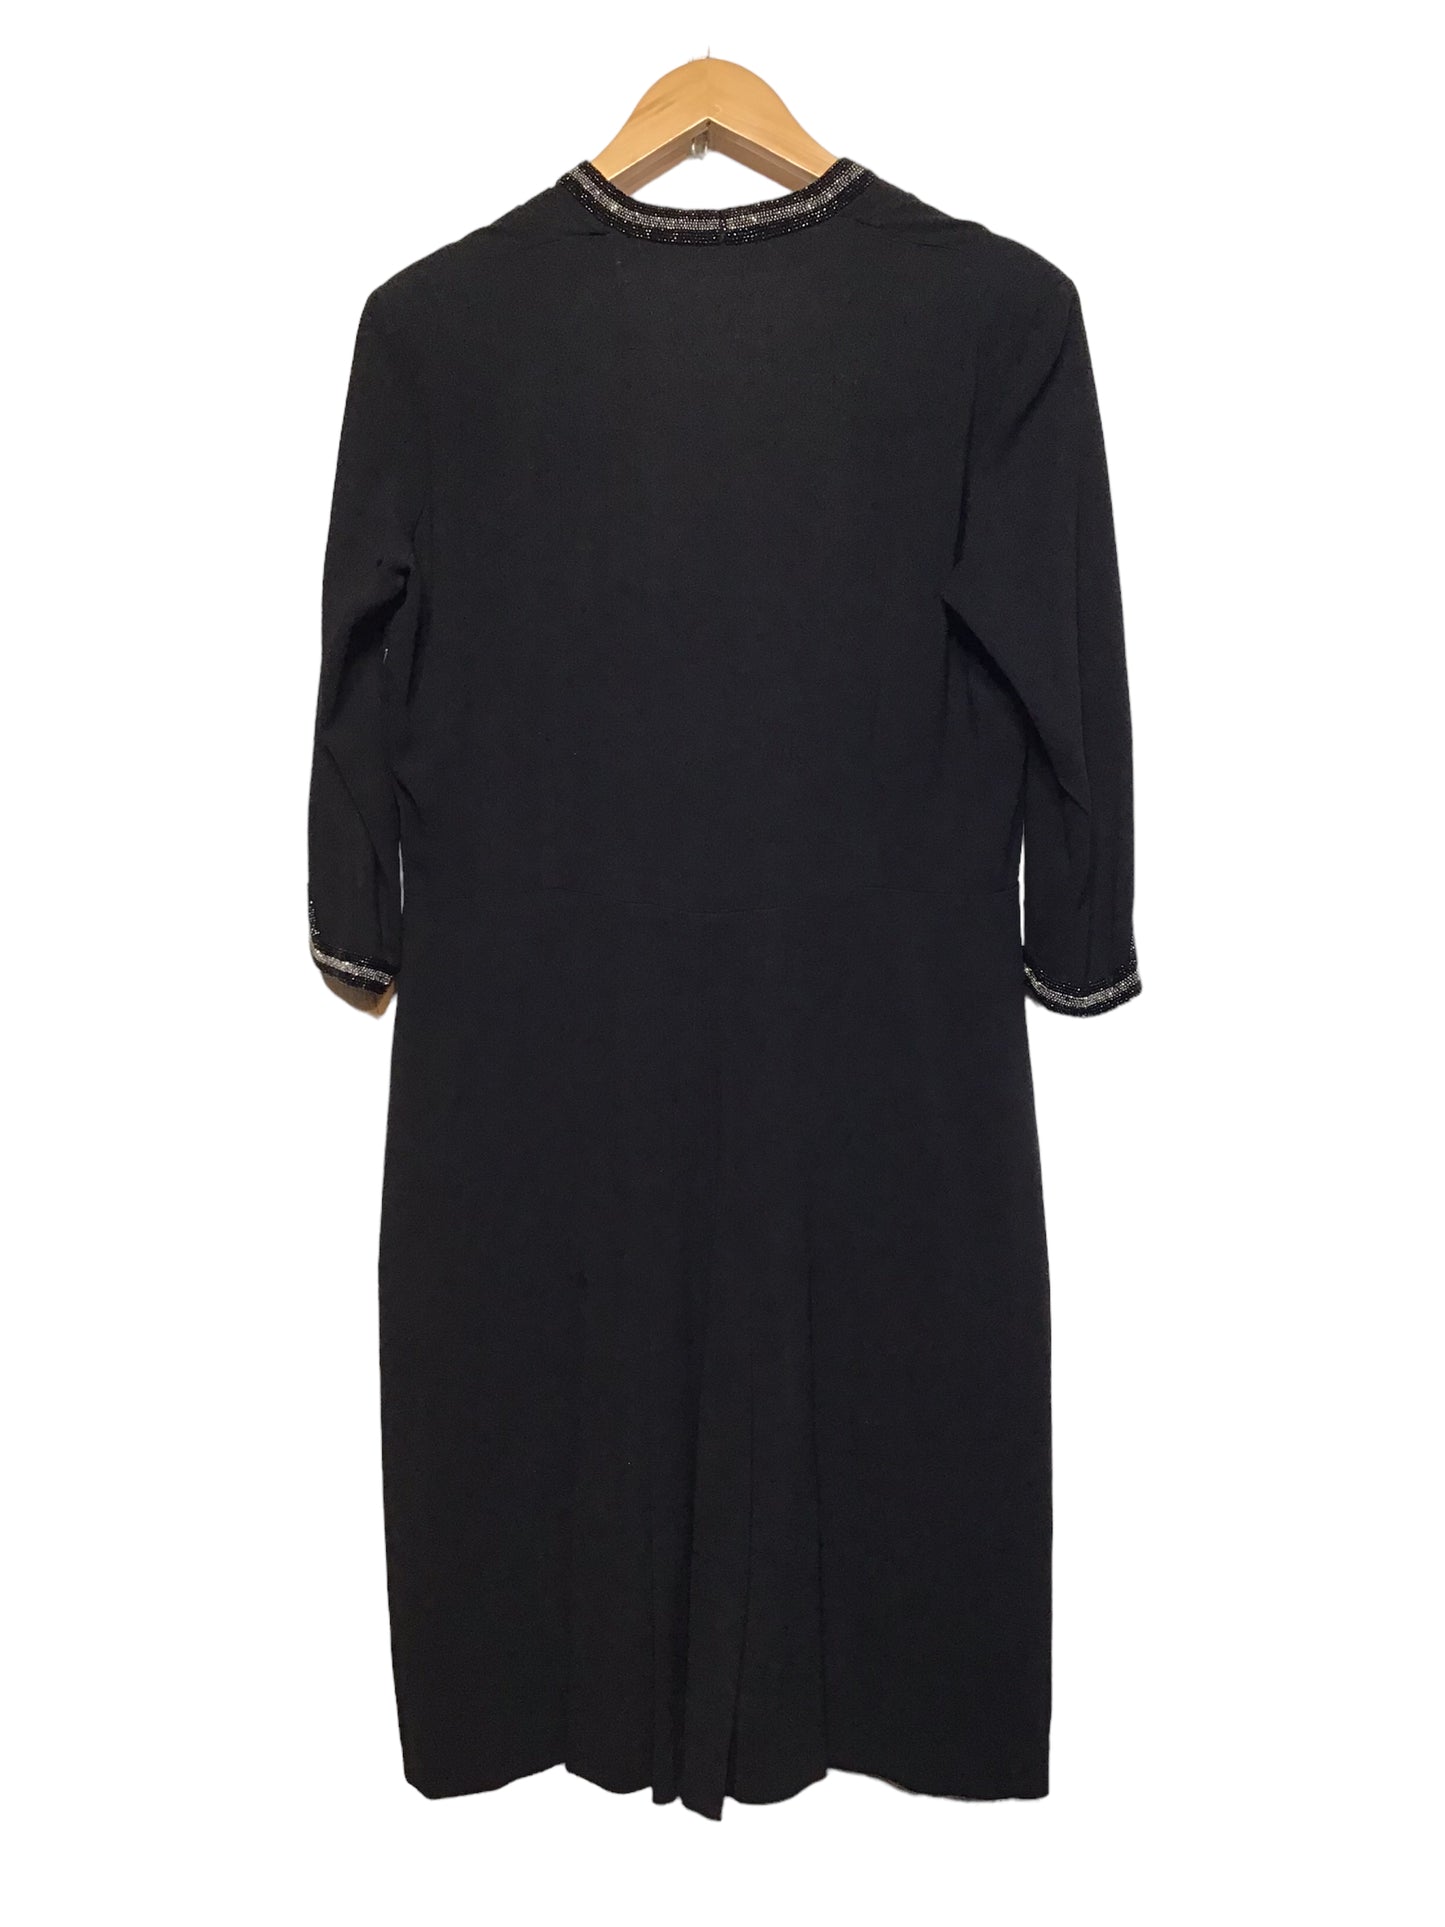 Dorothy Walker Black Dress (Size L)